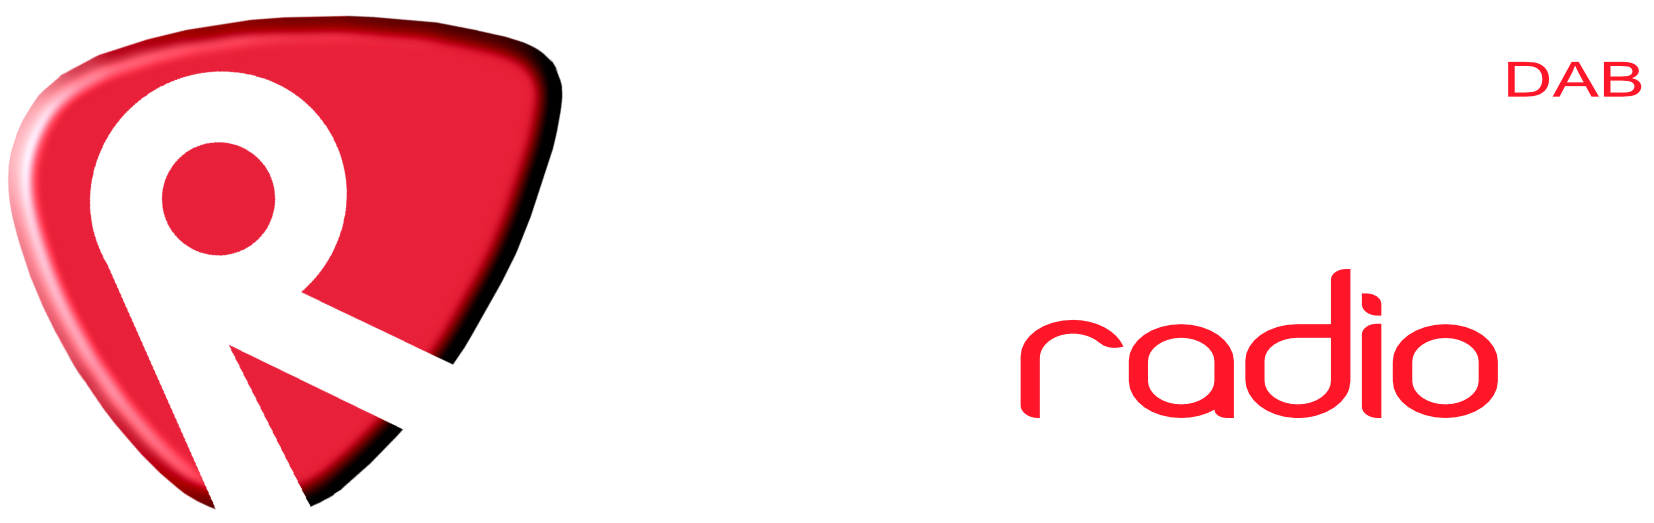 Regency Radio BRIGHTON